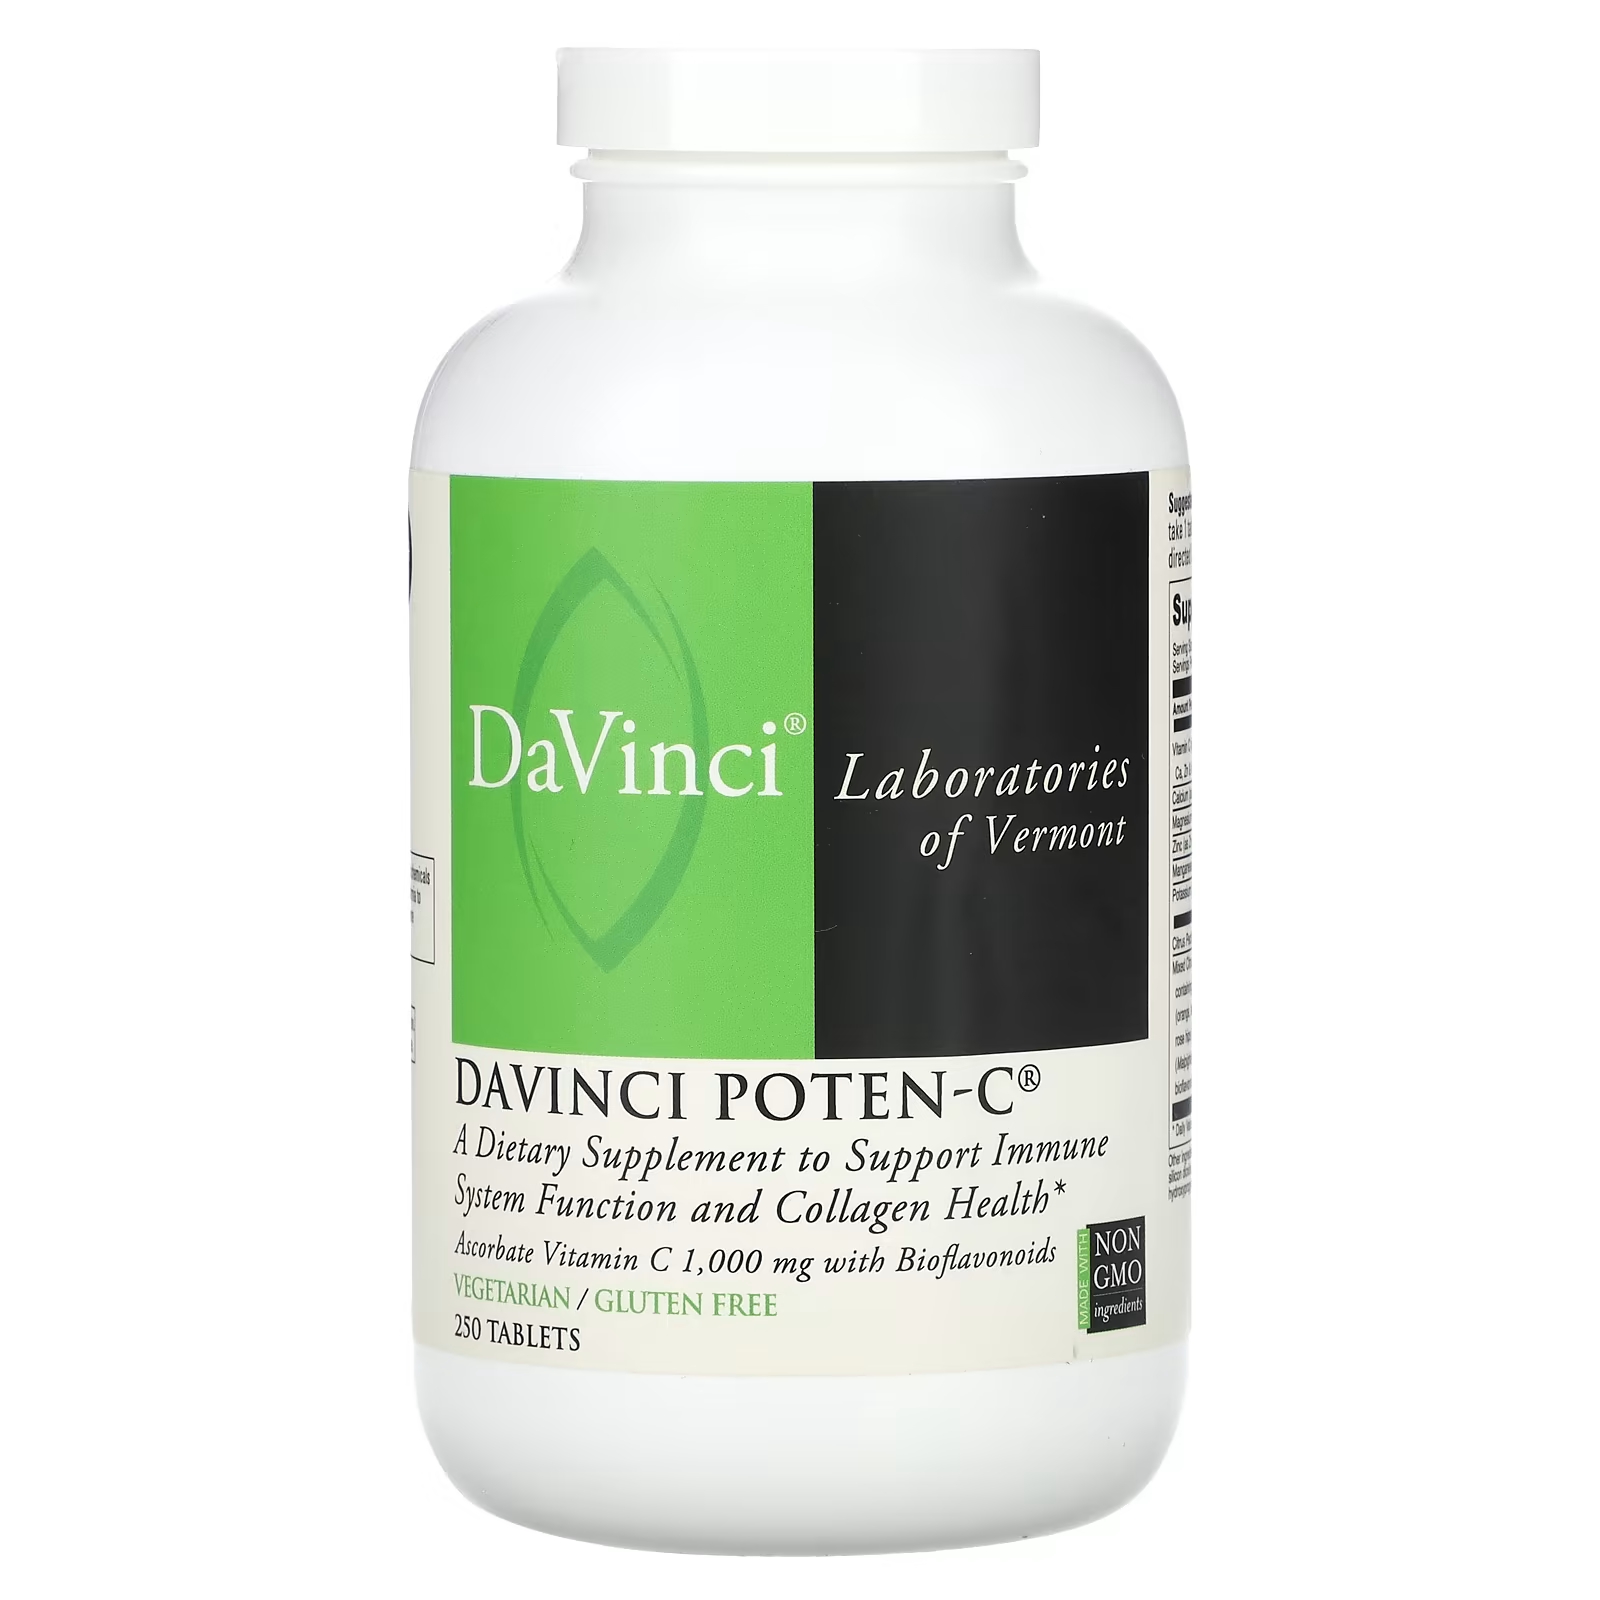 Пищевая добавка DaVinci Laboratories of Vermont Davinci Poten-C, 250 таблеток davinci laboratories of vermont липосомальный витамин c 300 мл 10 15 унций